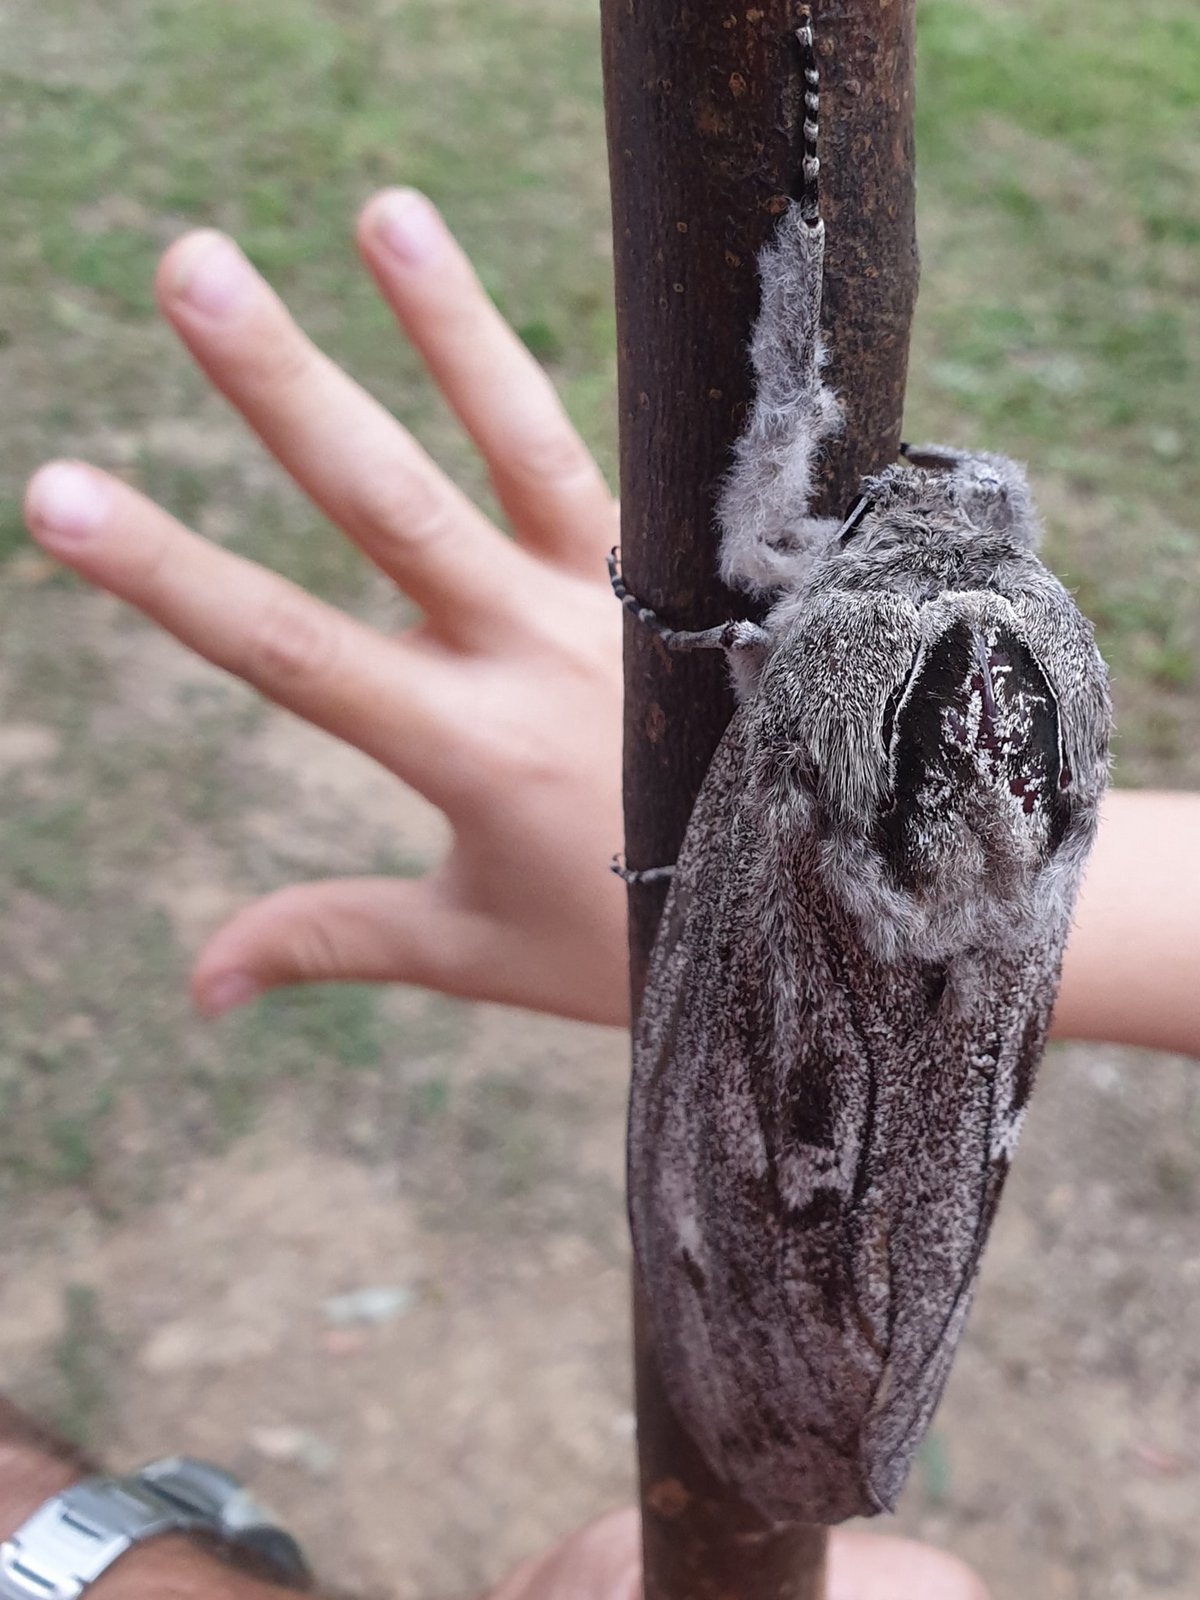 Une femme australienne découvre un papillon de nuit de la taille d’une main humaine avec une envergure de 25 cm